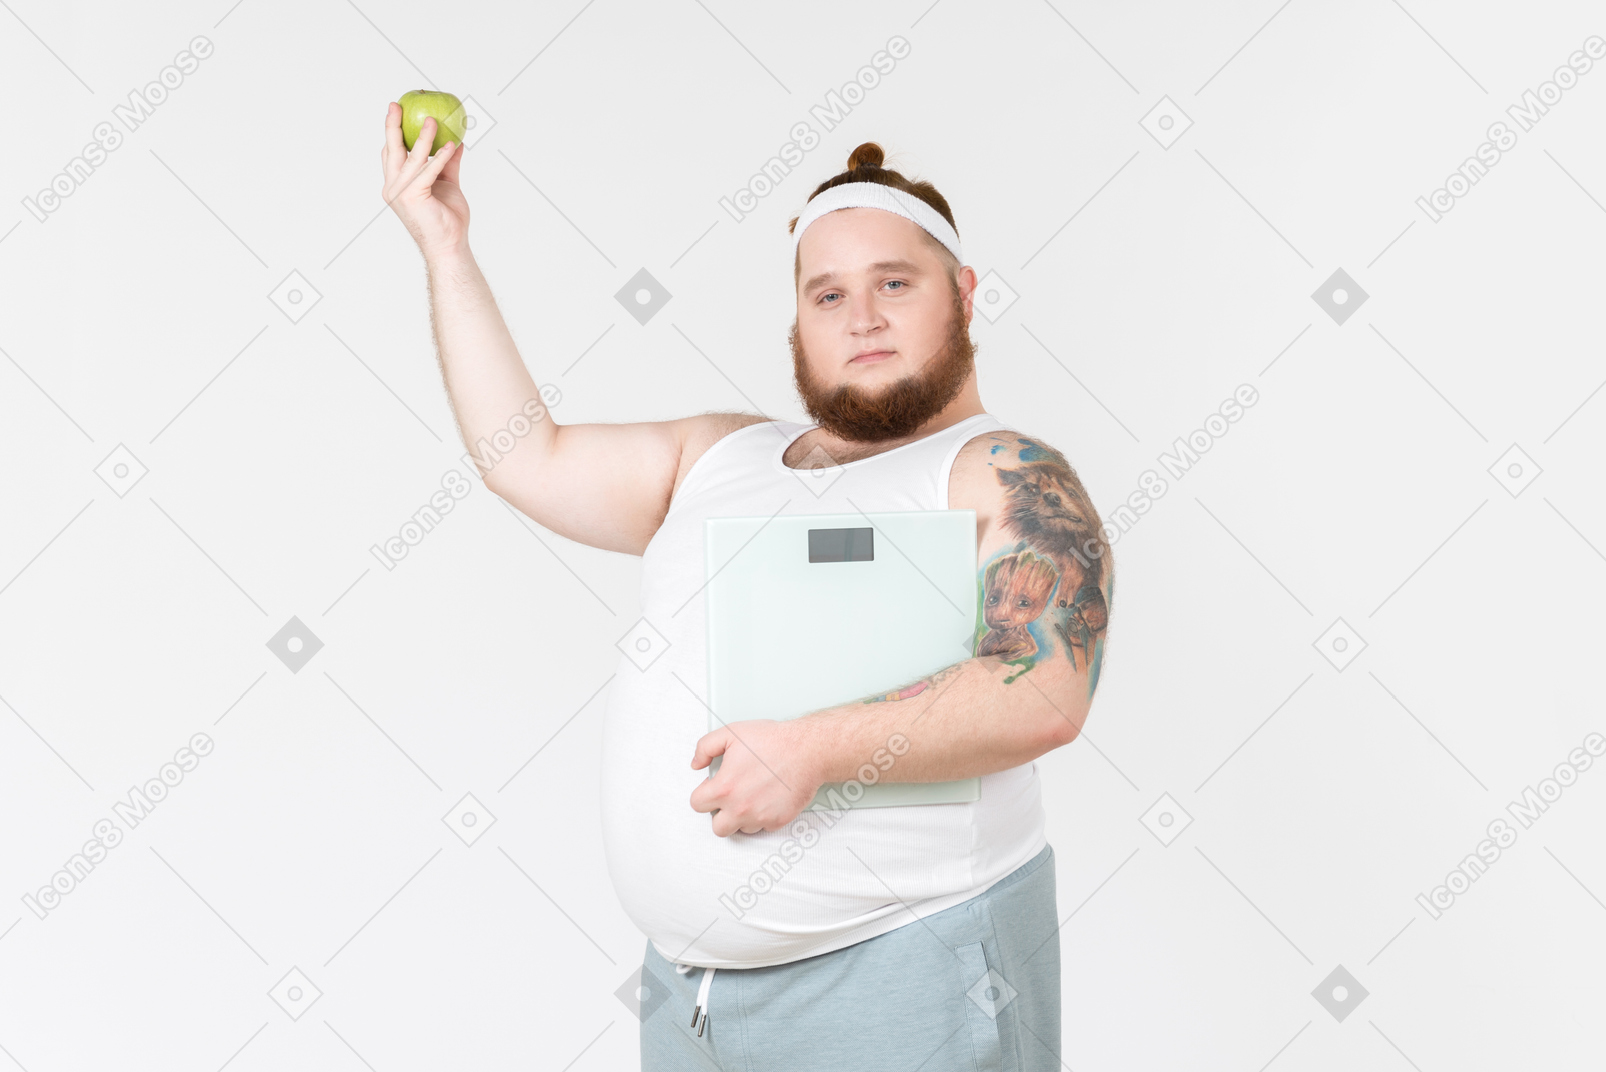 Молодой большой парень в спортивной одежде держит вес и яблоко